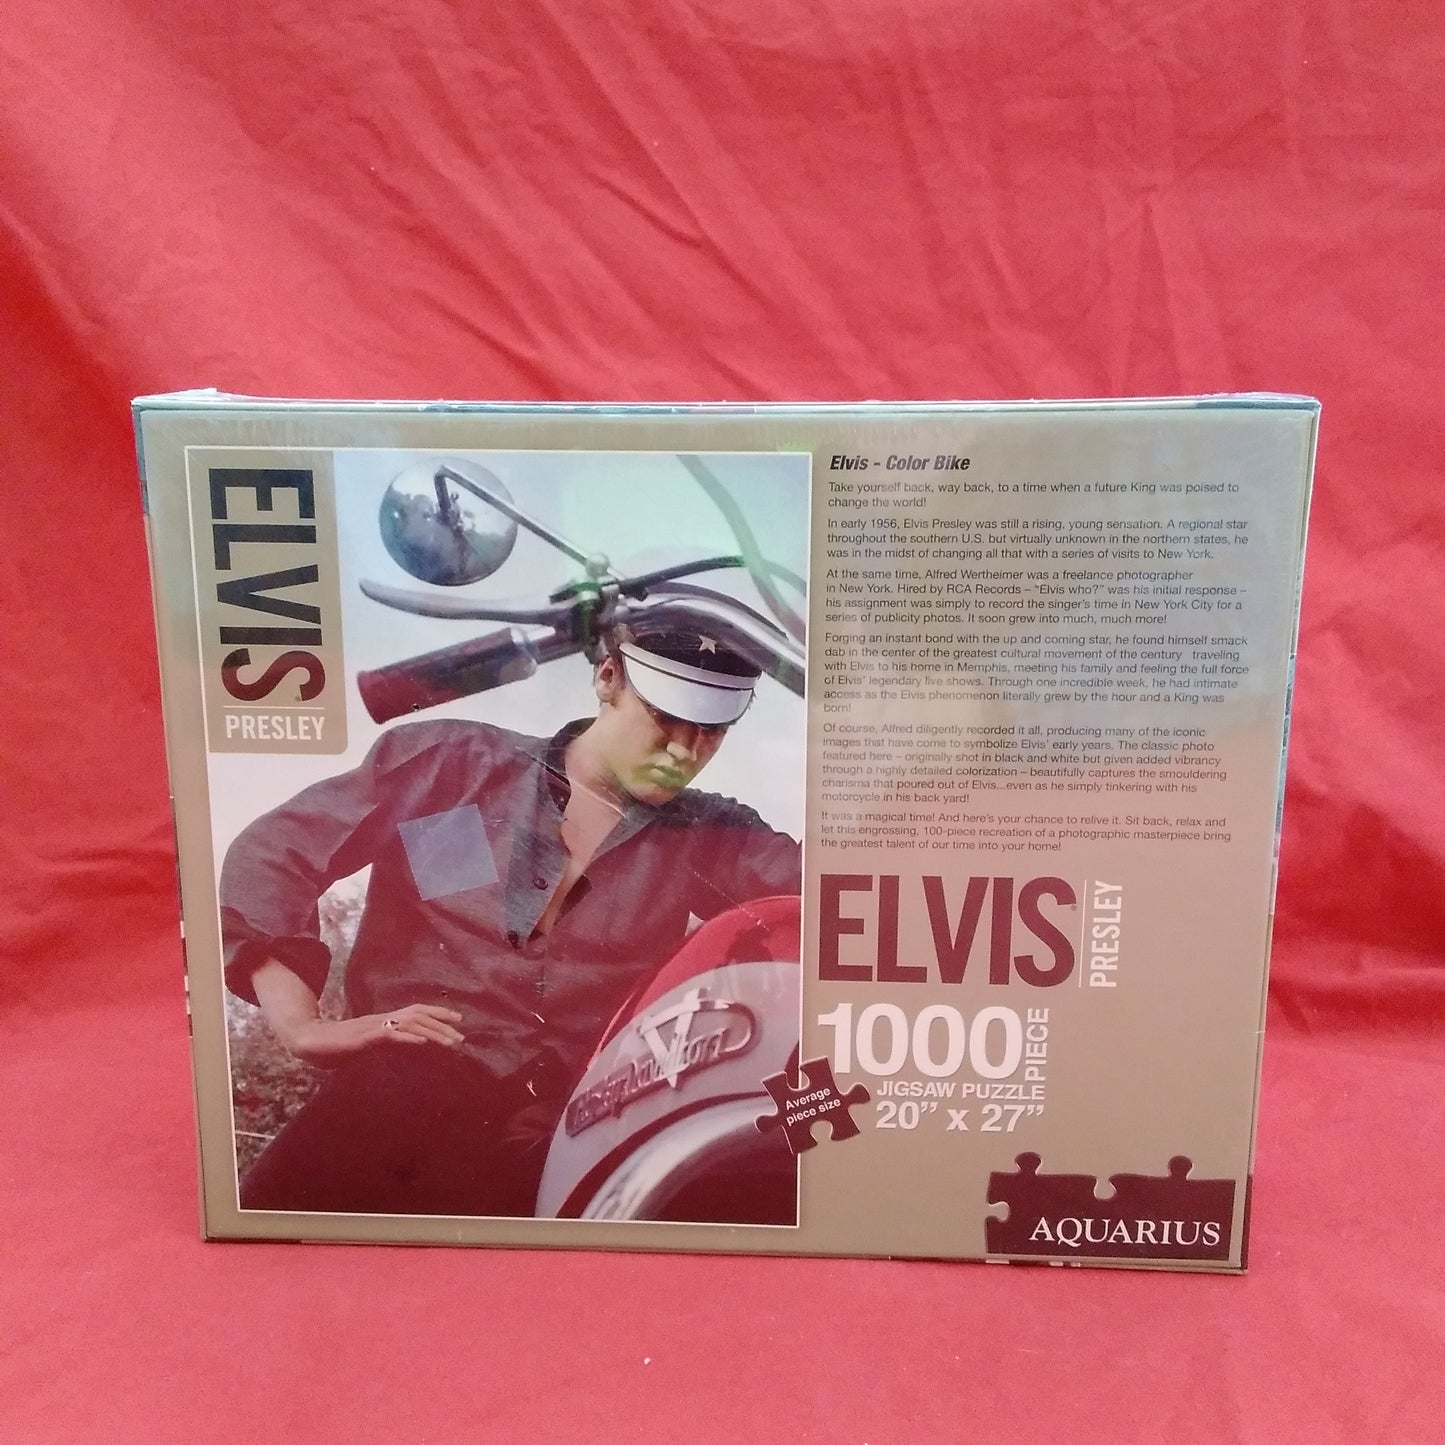 NIB - Elvis Presley 1000 Piece Puzzle by Aquarius - Size: 20"x27"